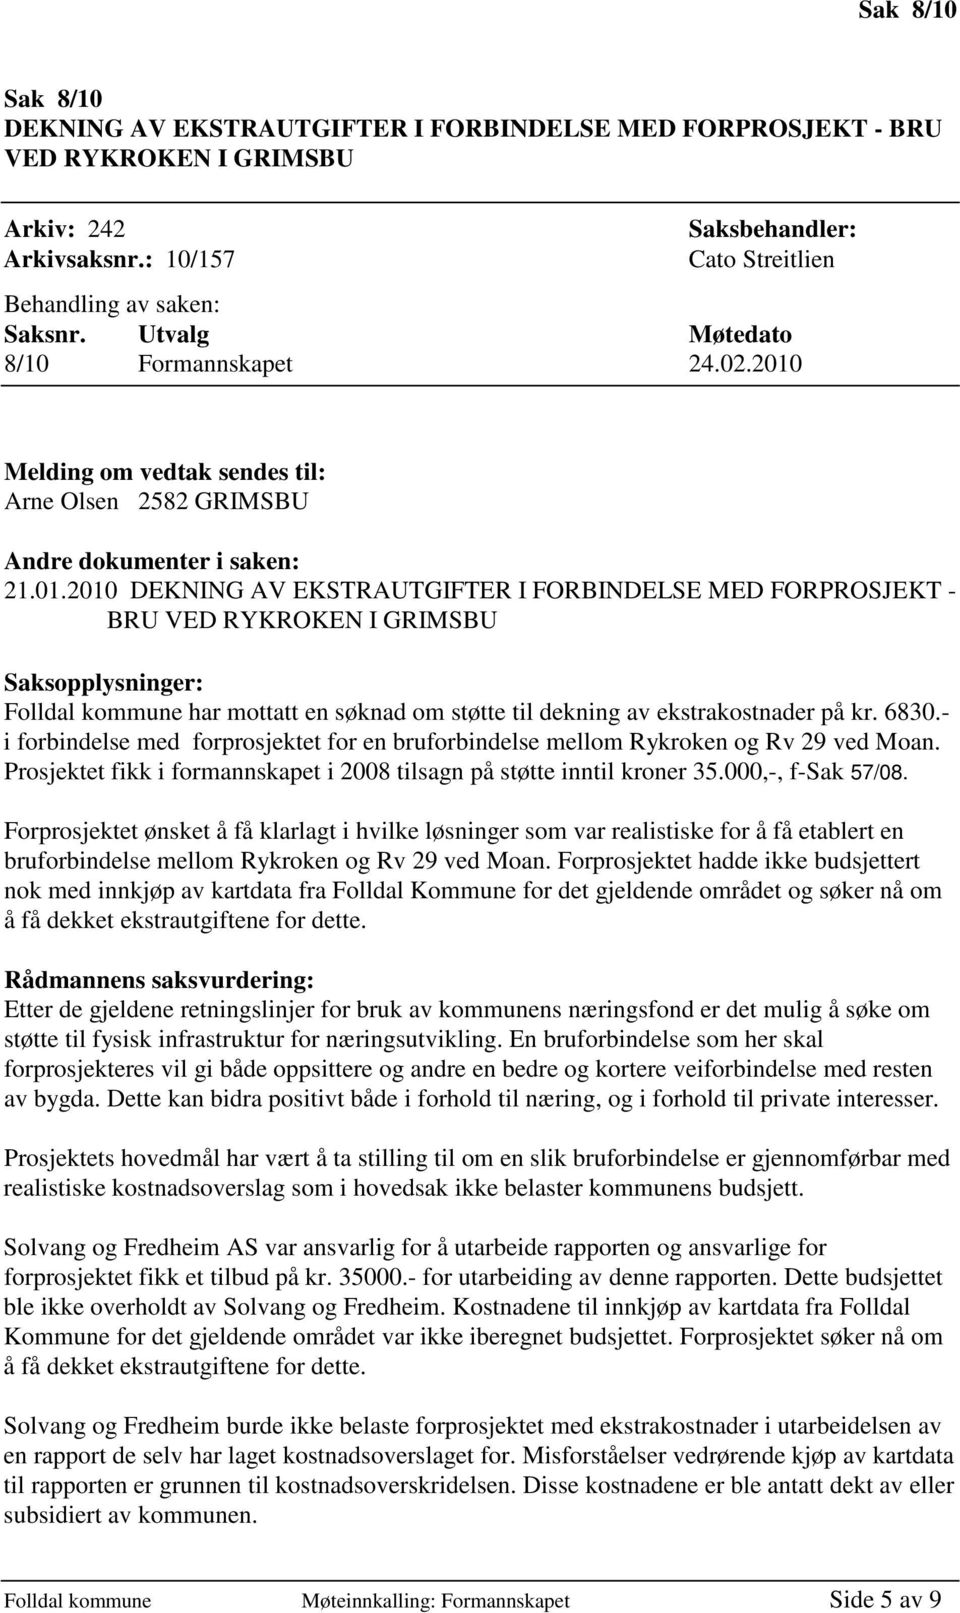 Melding om vedtak sendes til: Arne Olsen 2582 GRIMSBU Andre dokumenter i saken: 21.01.